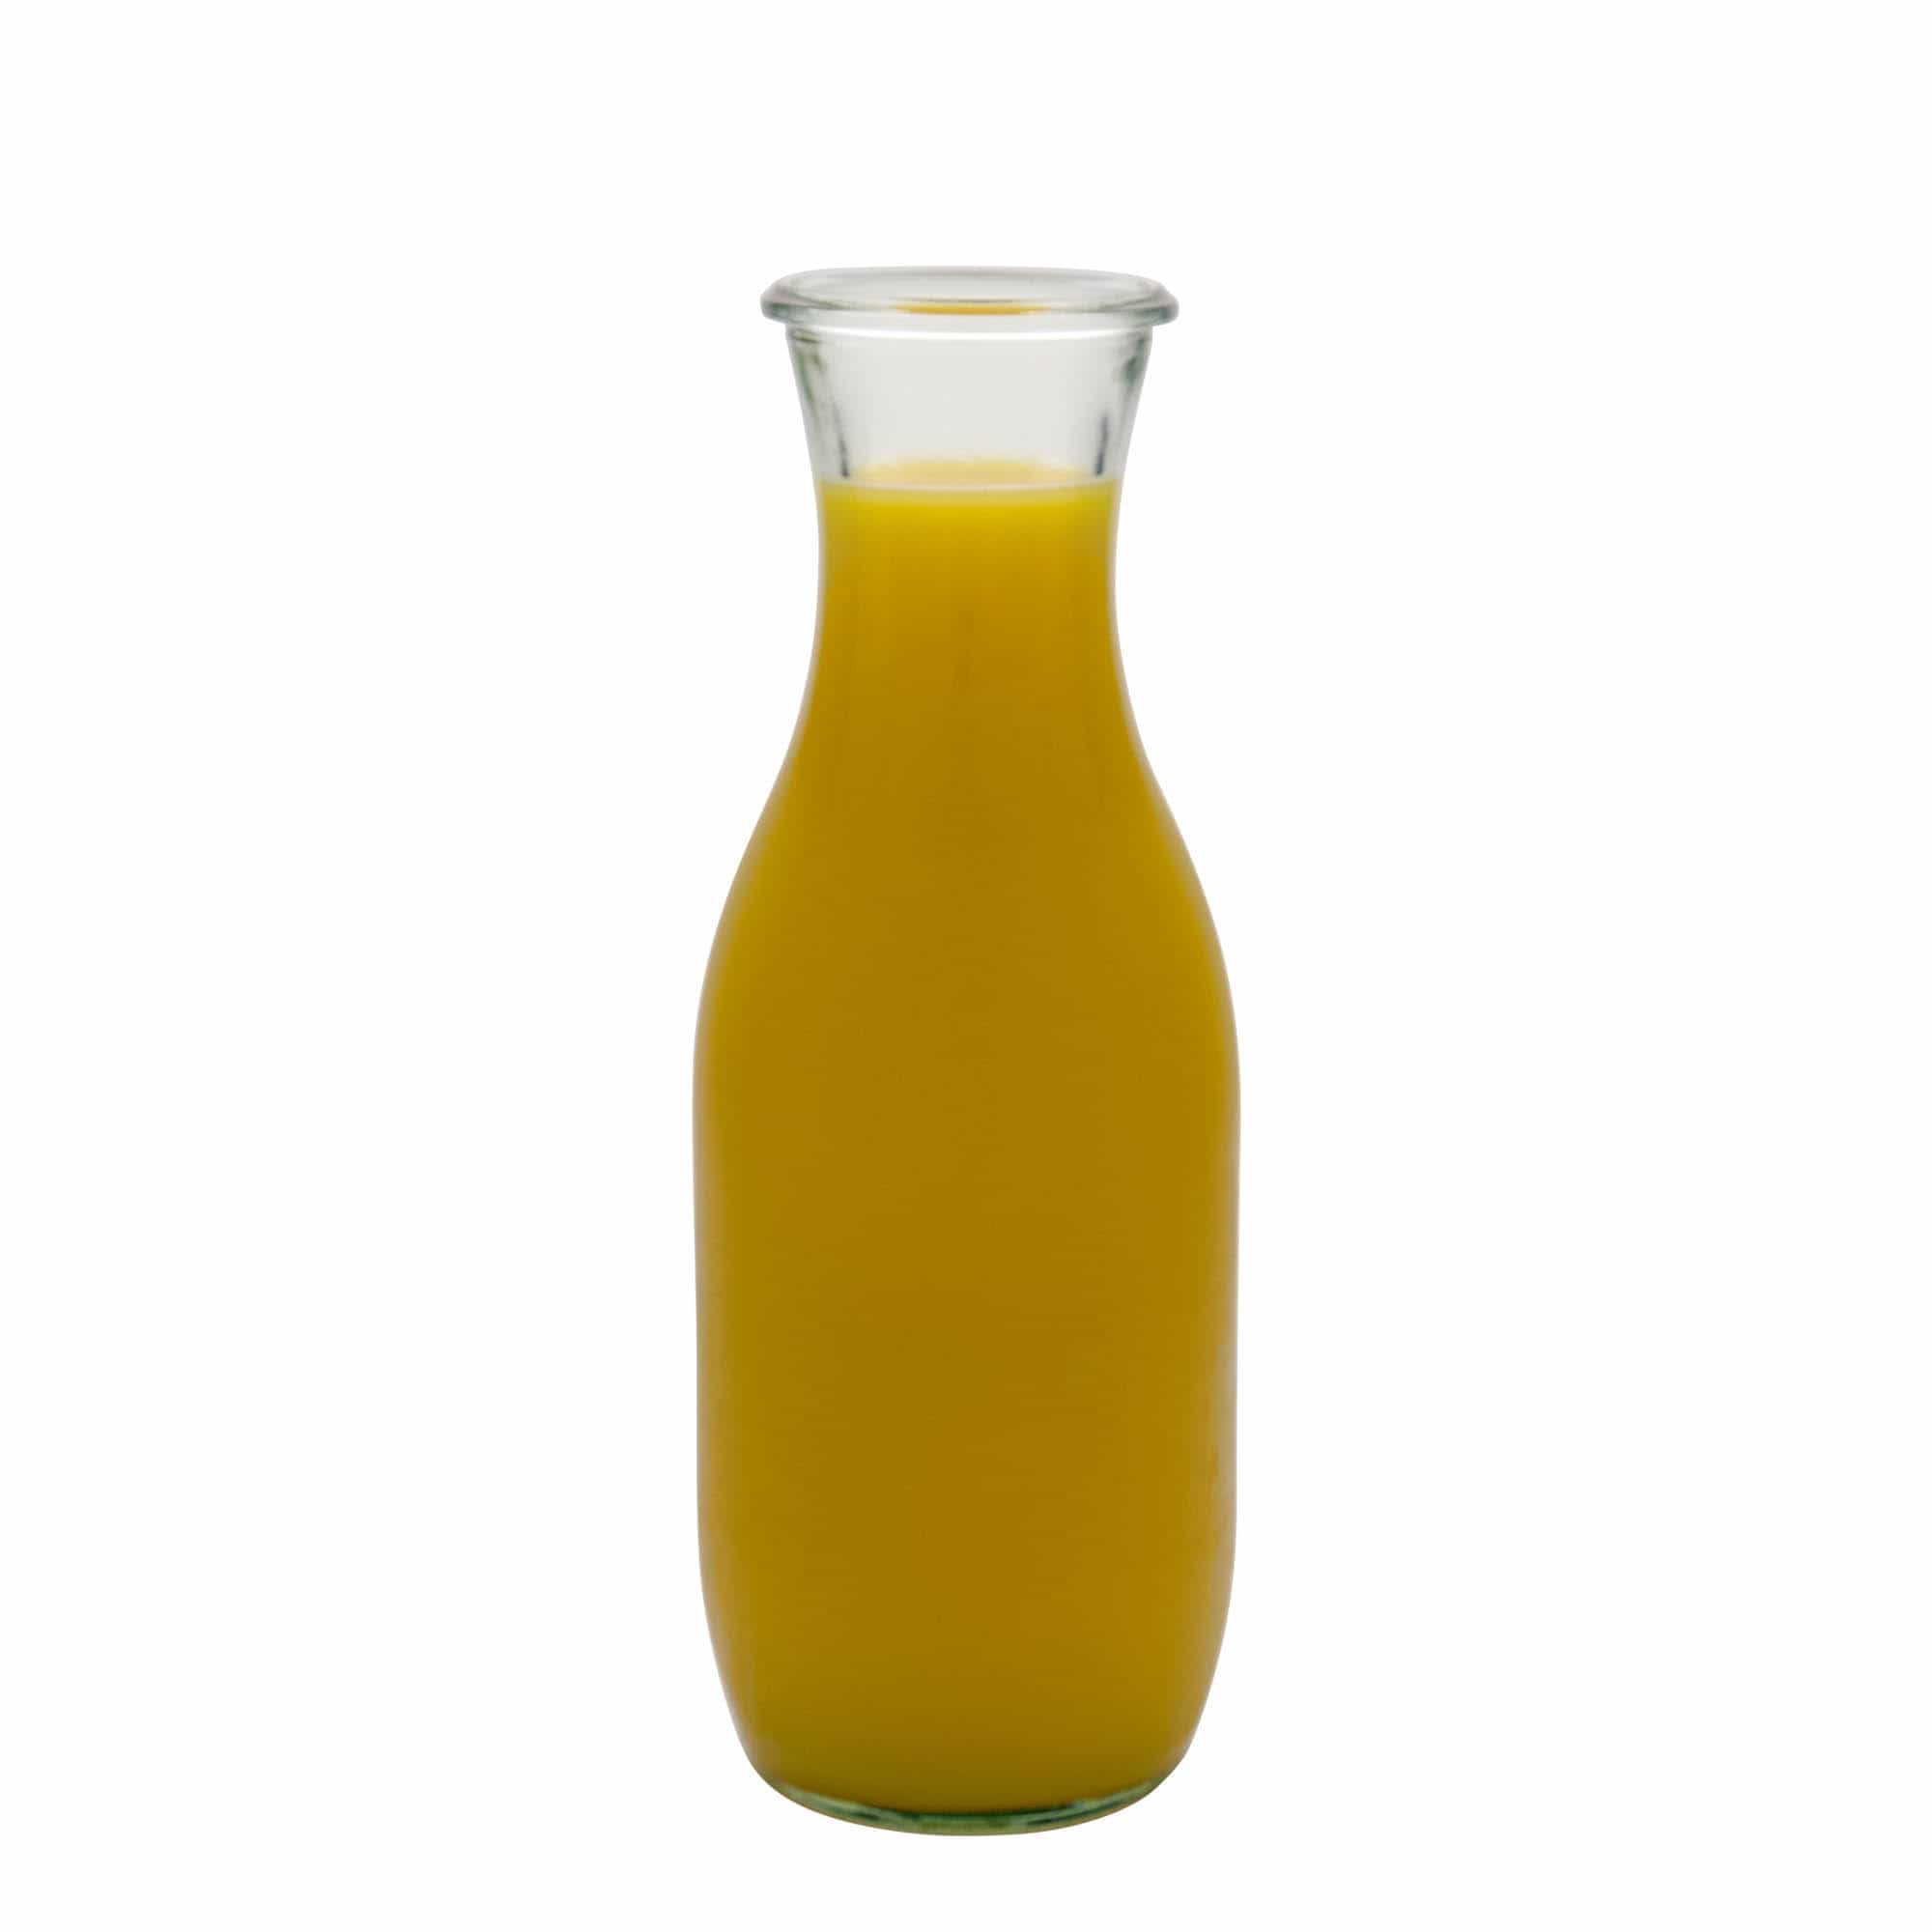 1,000 ml WECK juice bottle, closure: round rim